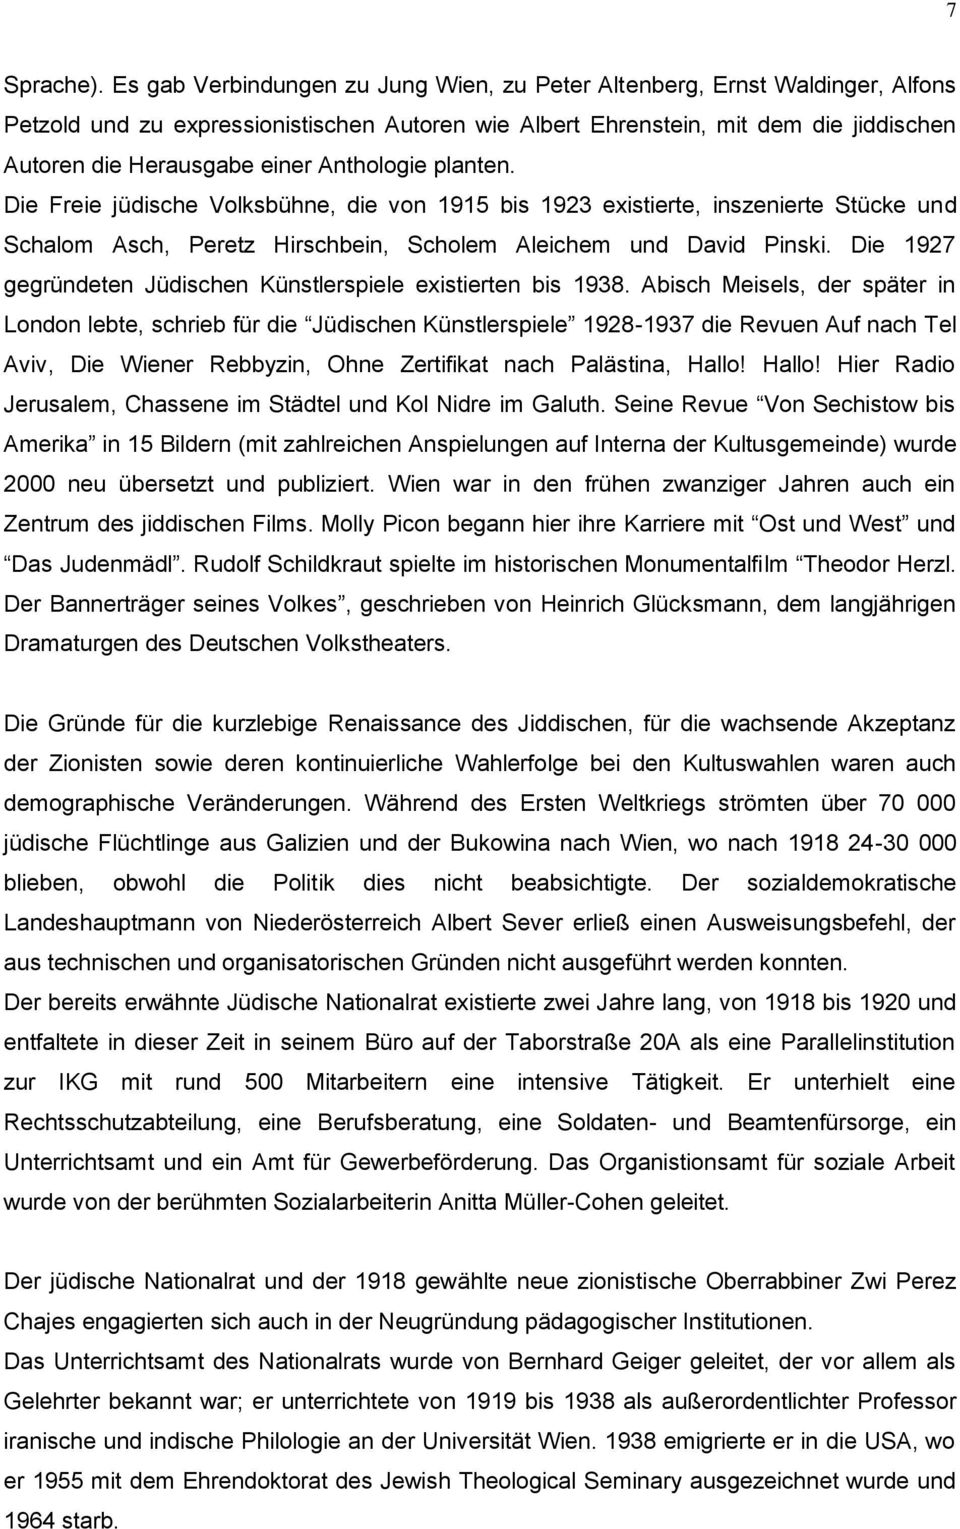 Anthologie planten. Die Freie jüdische Volksbühne, die von 1915 bis 1923 existierte, inszenierte Stücke und Schalom Asch, Peretz Hirschbein, Scholem Aleichem und David Pinski.